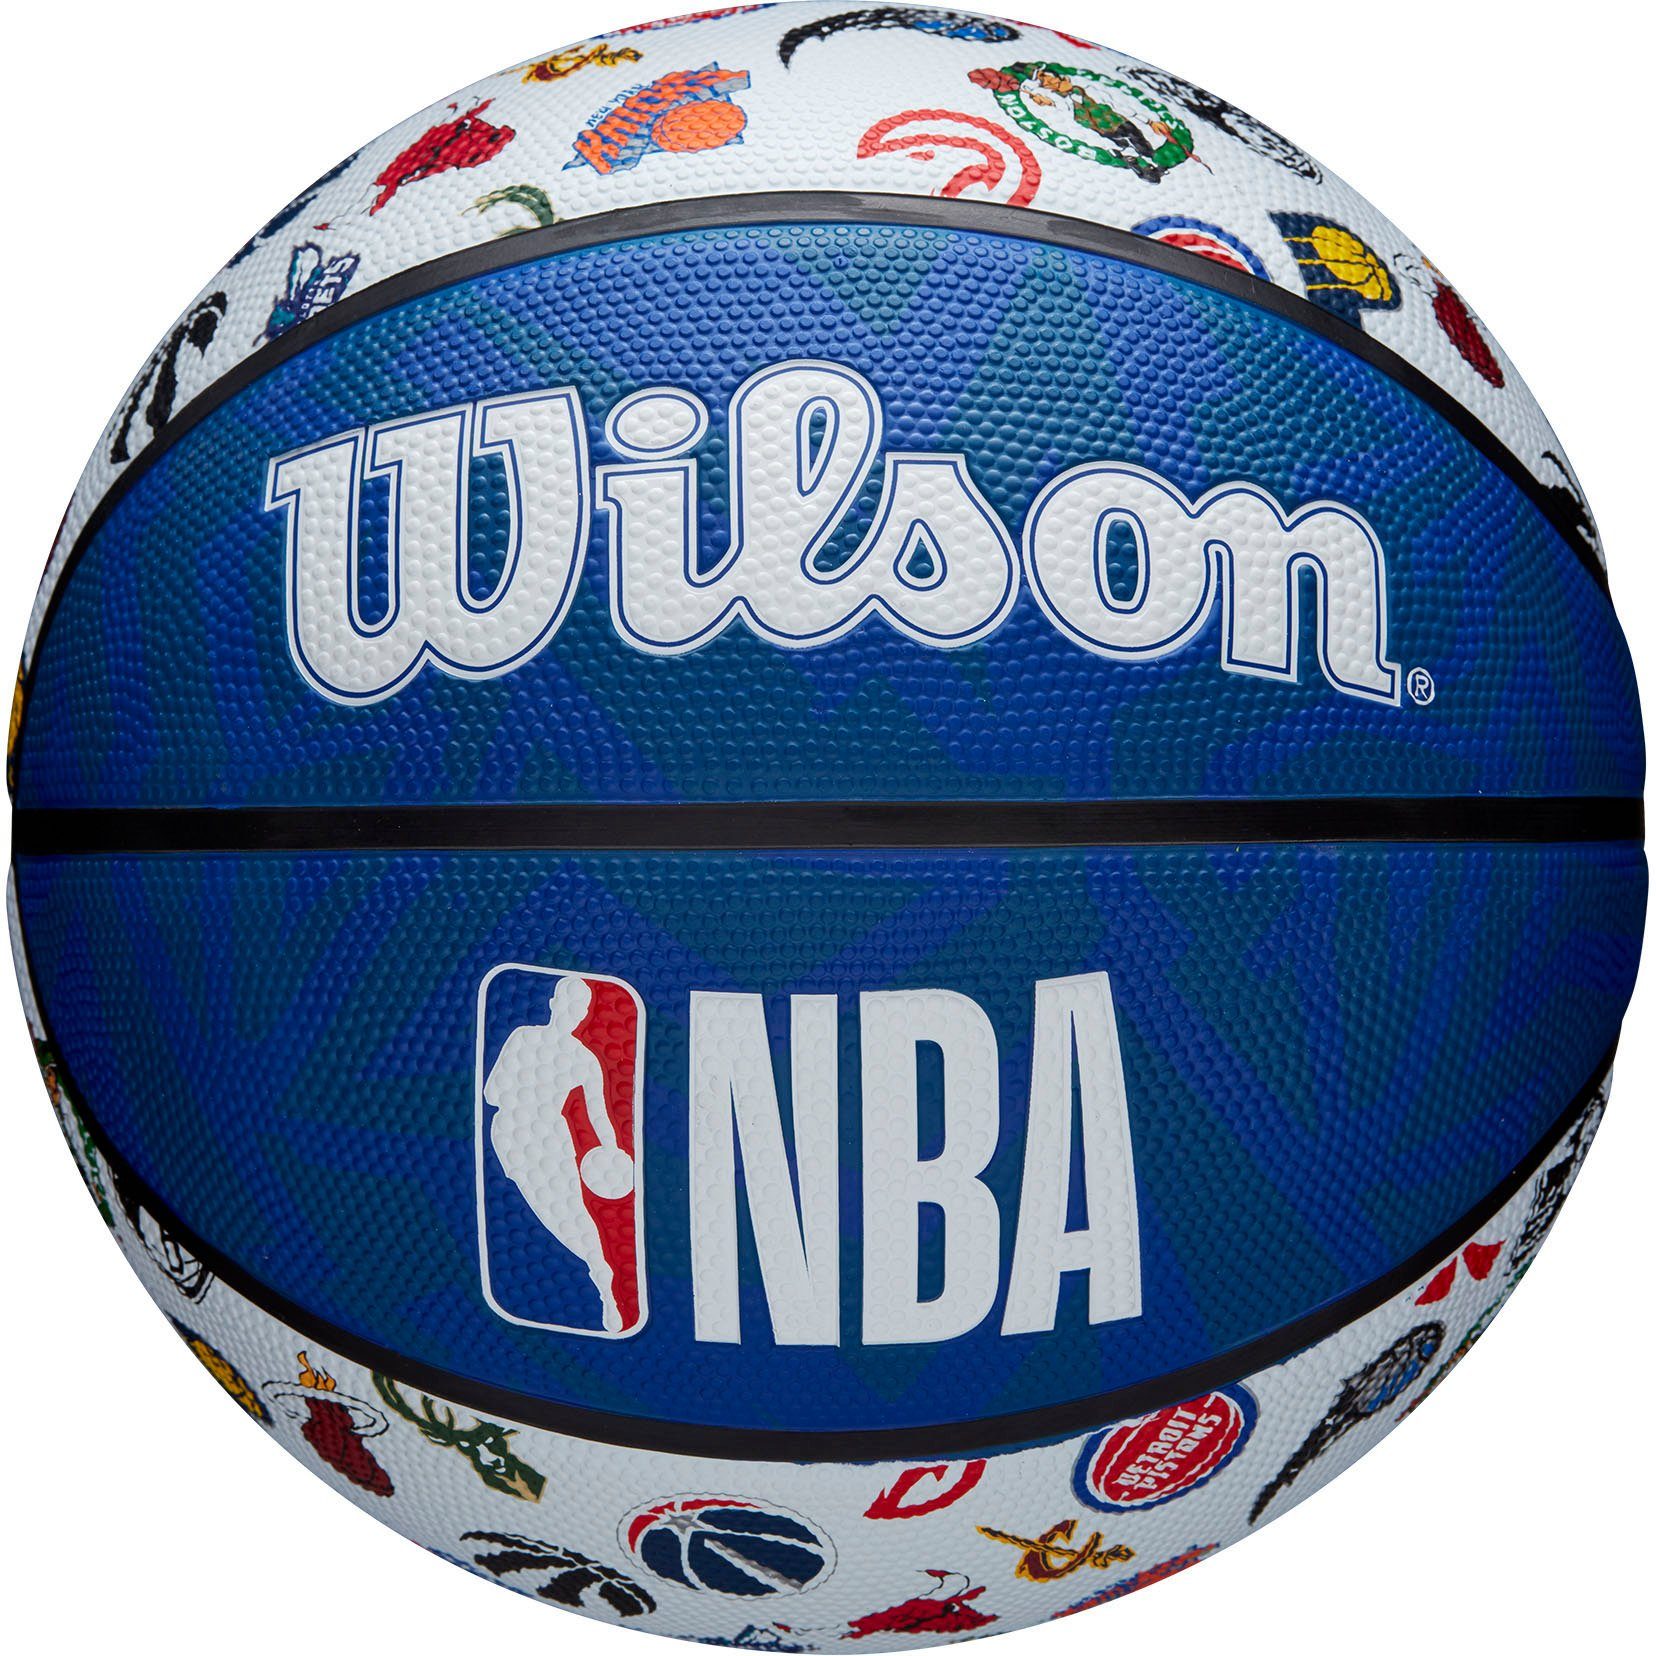 ALL RWB SZ7 Basketball TEAM XTREM Wilson toys NBA & BSKT sports